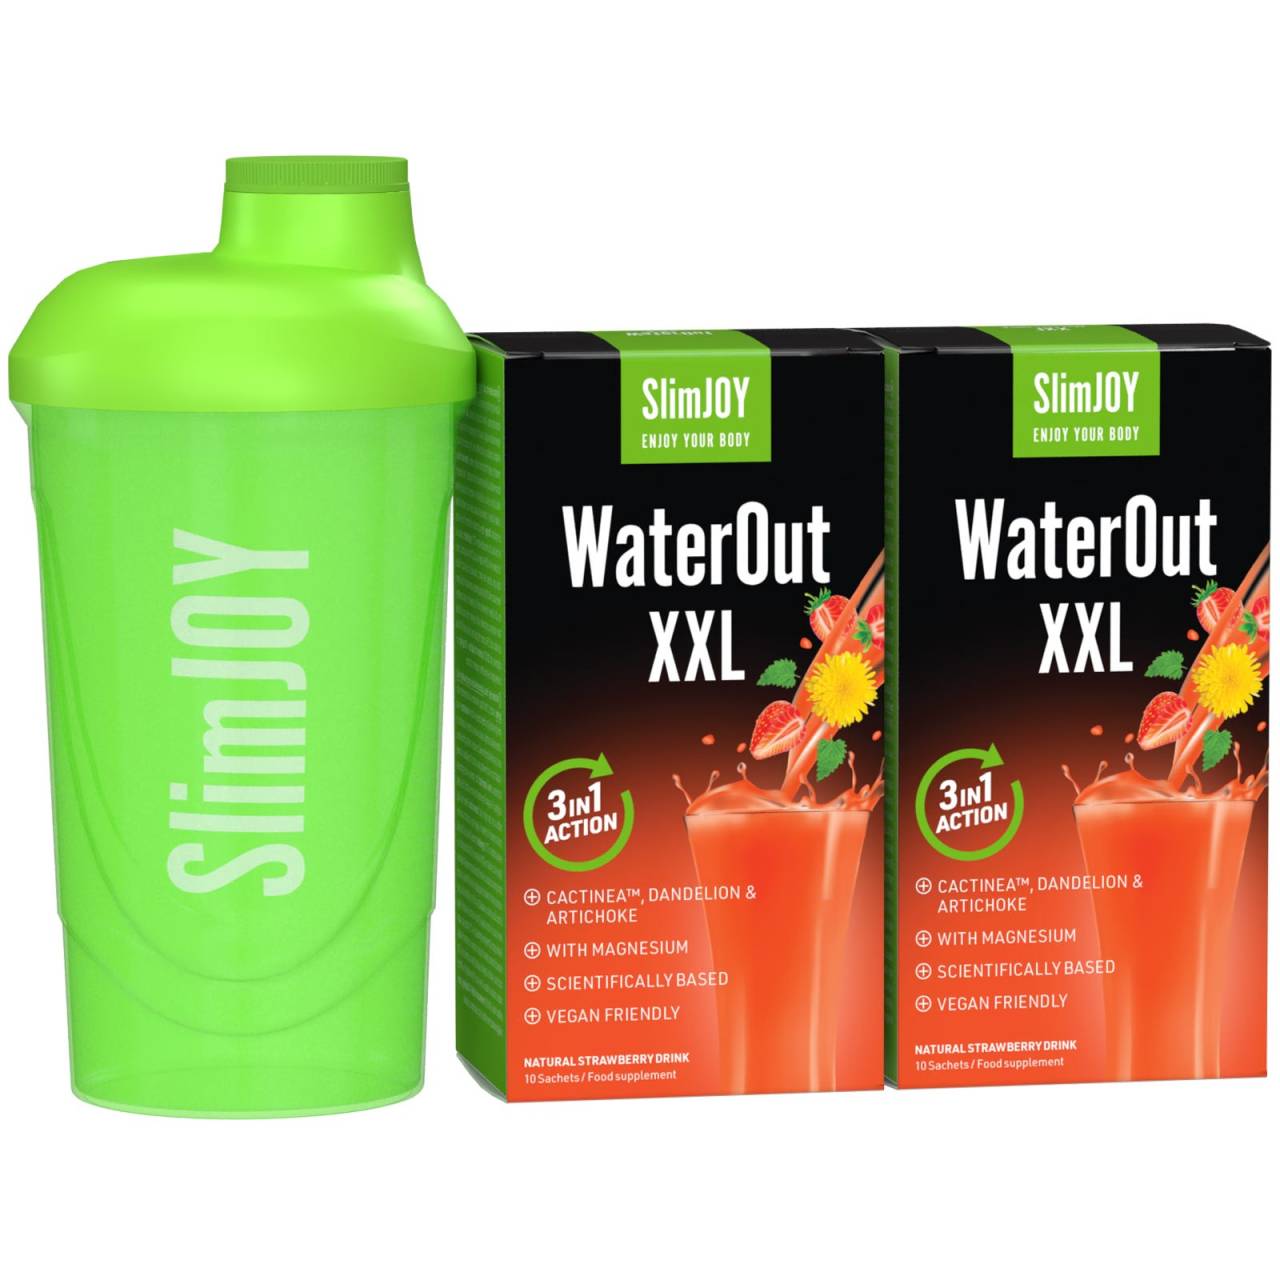 WaterOut XXL + Shaker GRATIS | 1+1 GRATIS | Potente diurético natural para adelgar rápido | Programa de 20 días | SlimJOY.